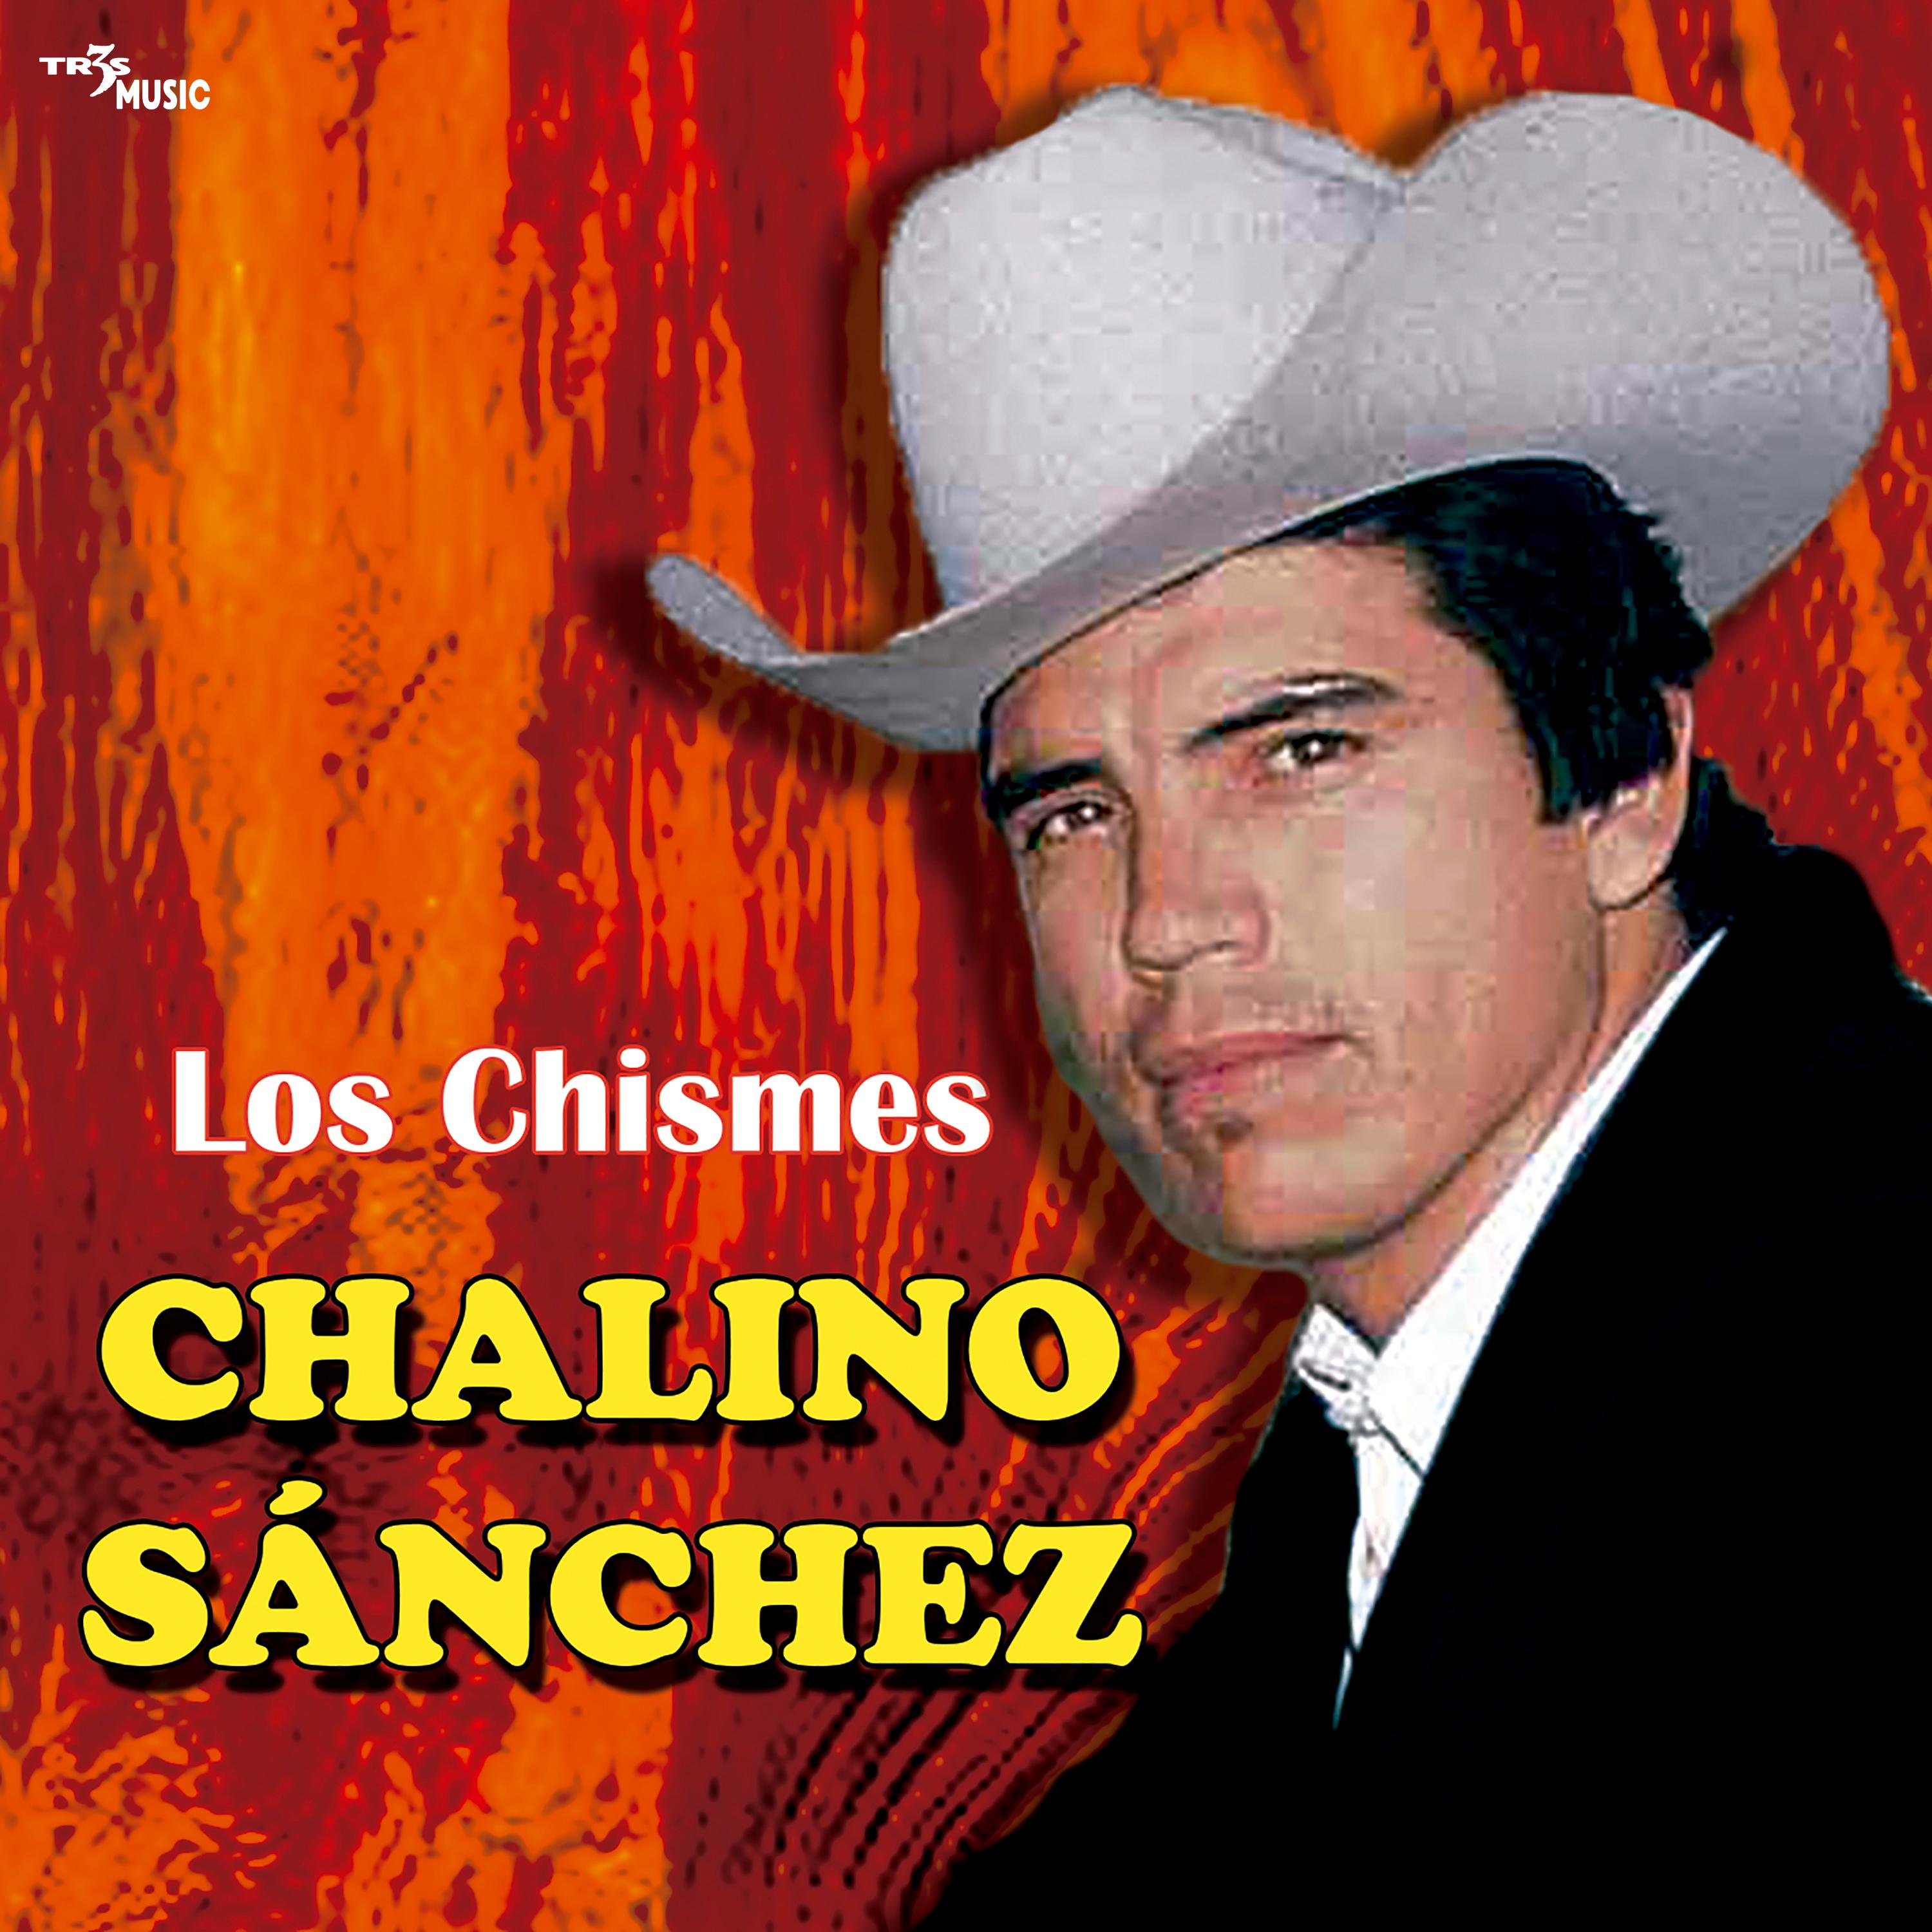 Chalino Sanchez - Carta de luto